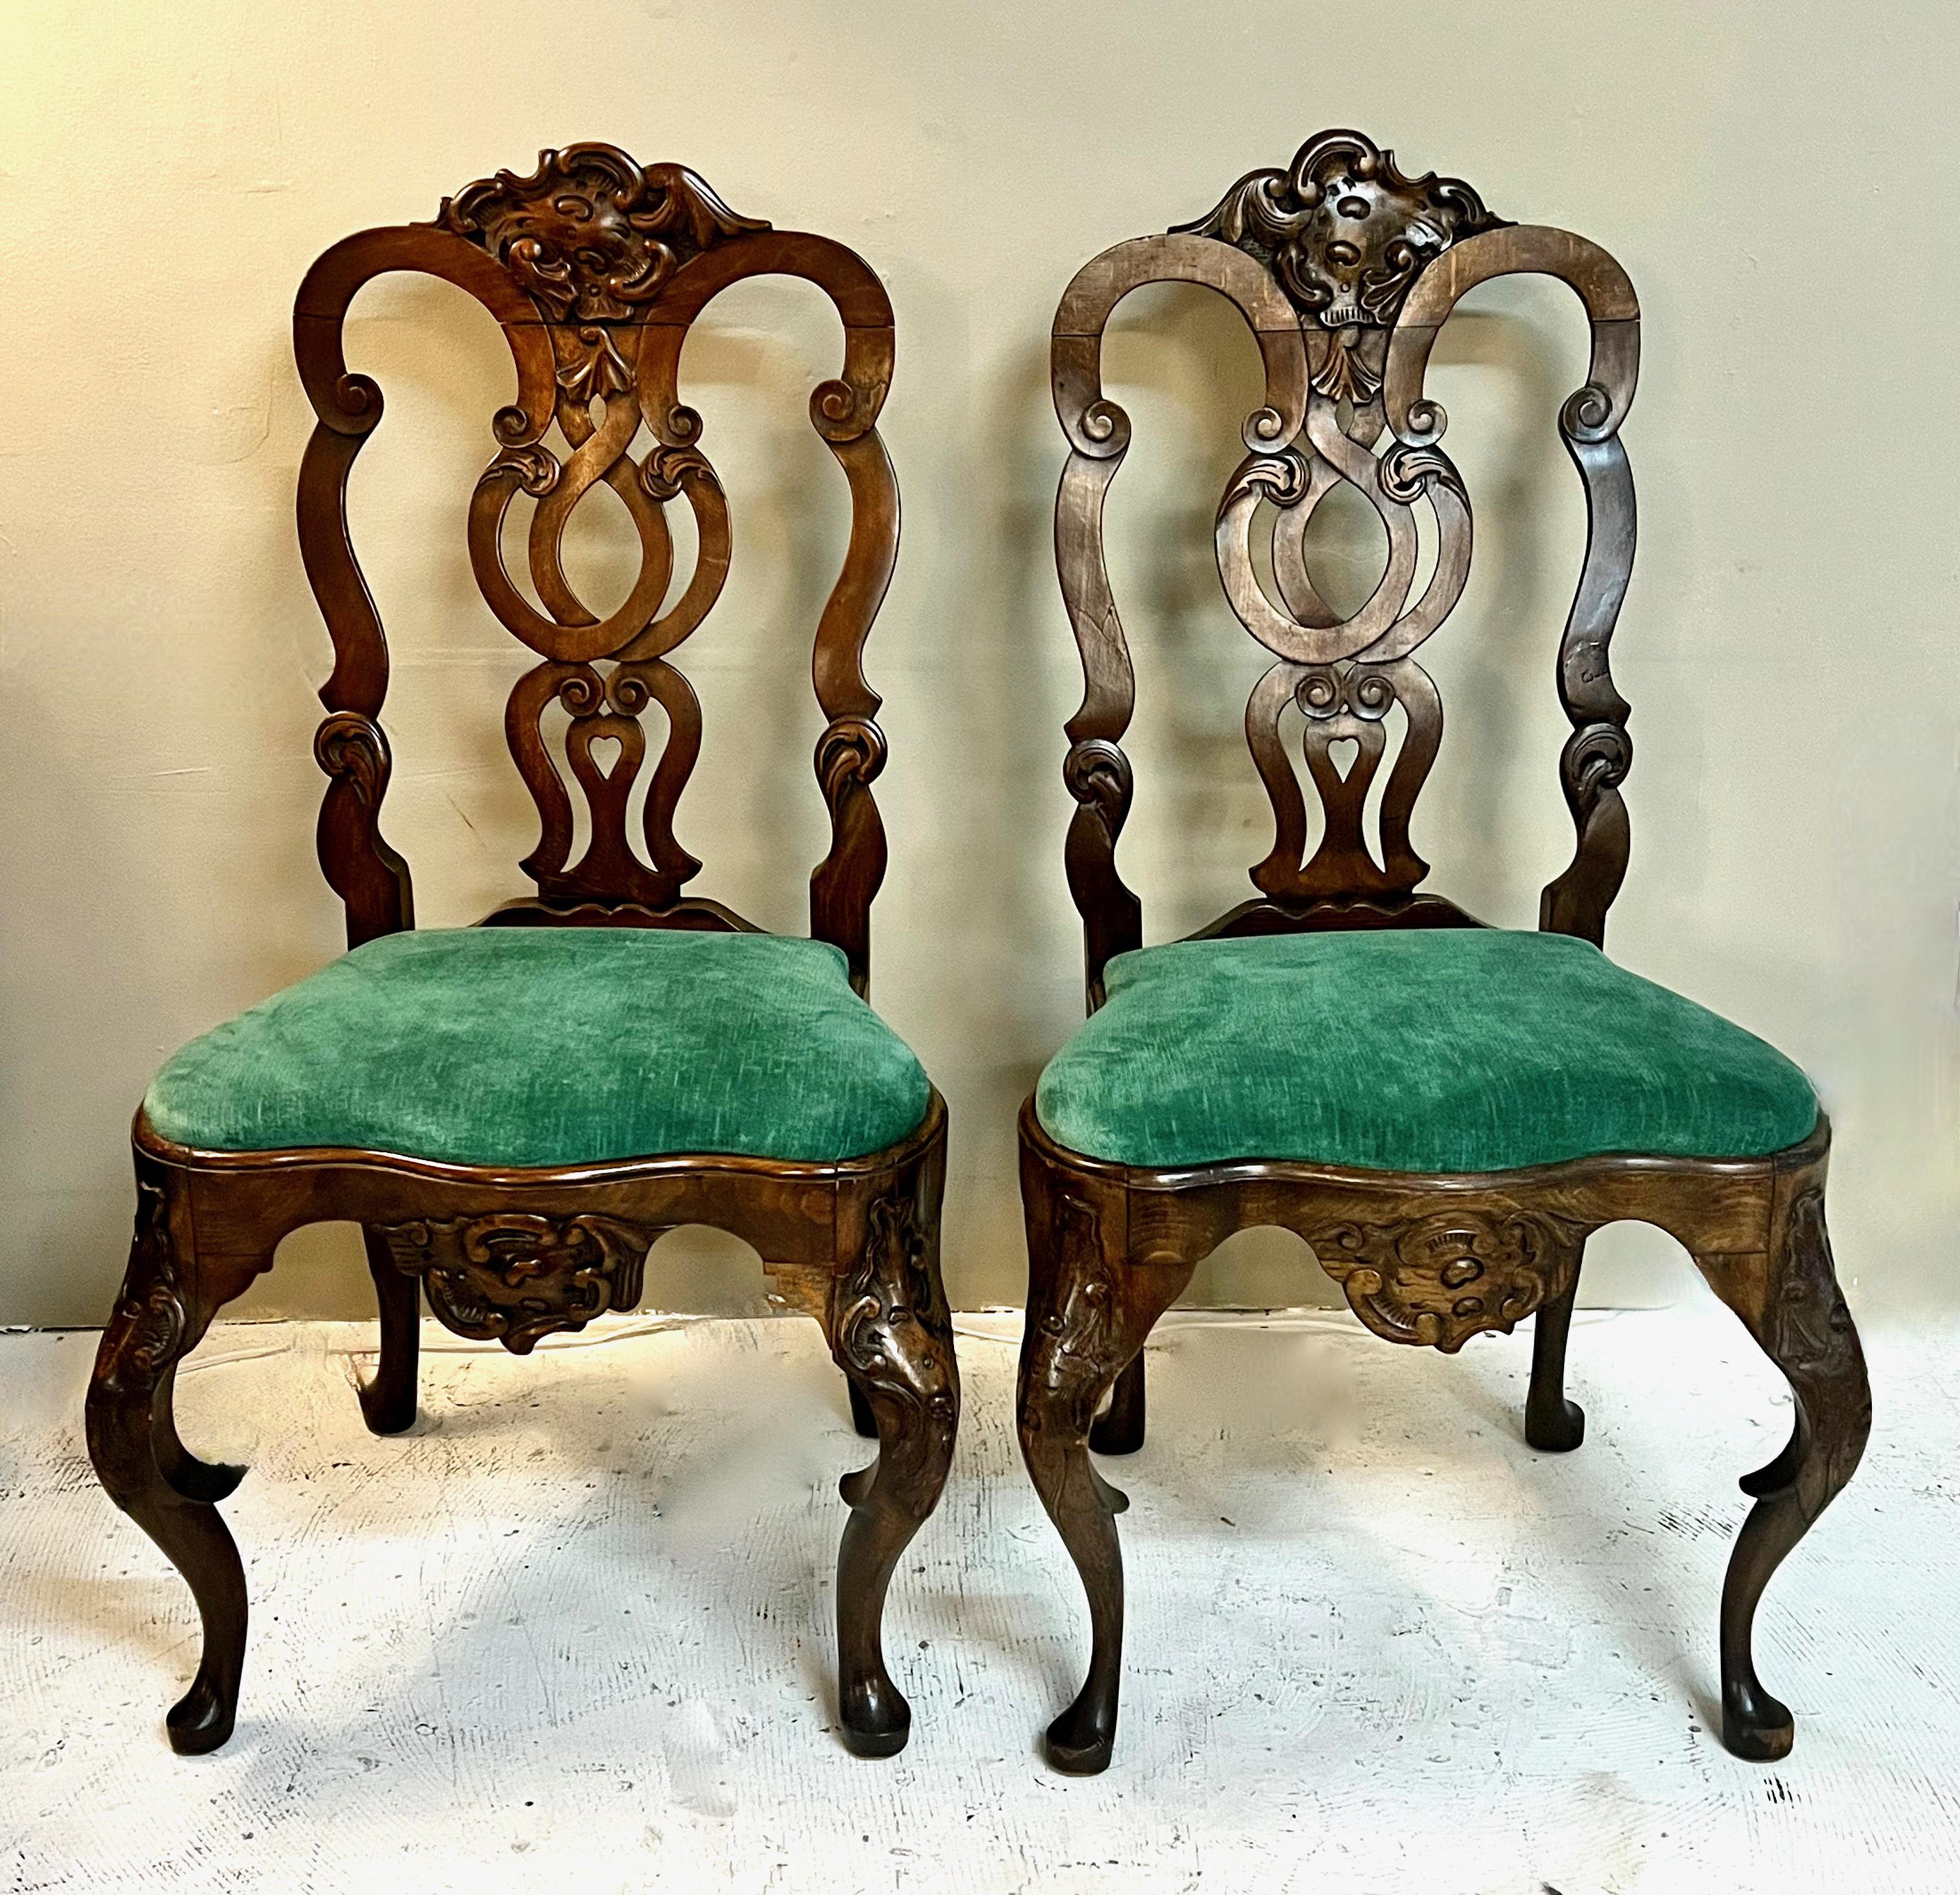 Il s'agit d'une superbe paire de chaises d'appoint en chêne portugais sculpté de style rococo. Ces chaises sont magnifiquement sculptées avec des pieds cabriole exagérés, détaillés avec des genoux sculptés, des étriers et des pieds pad. Le dosseret